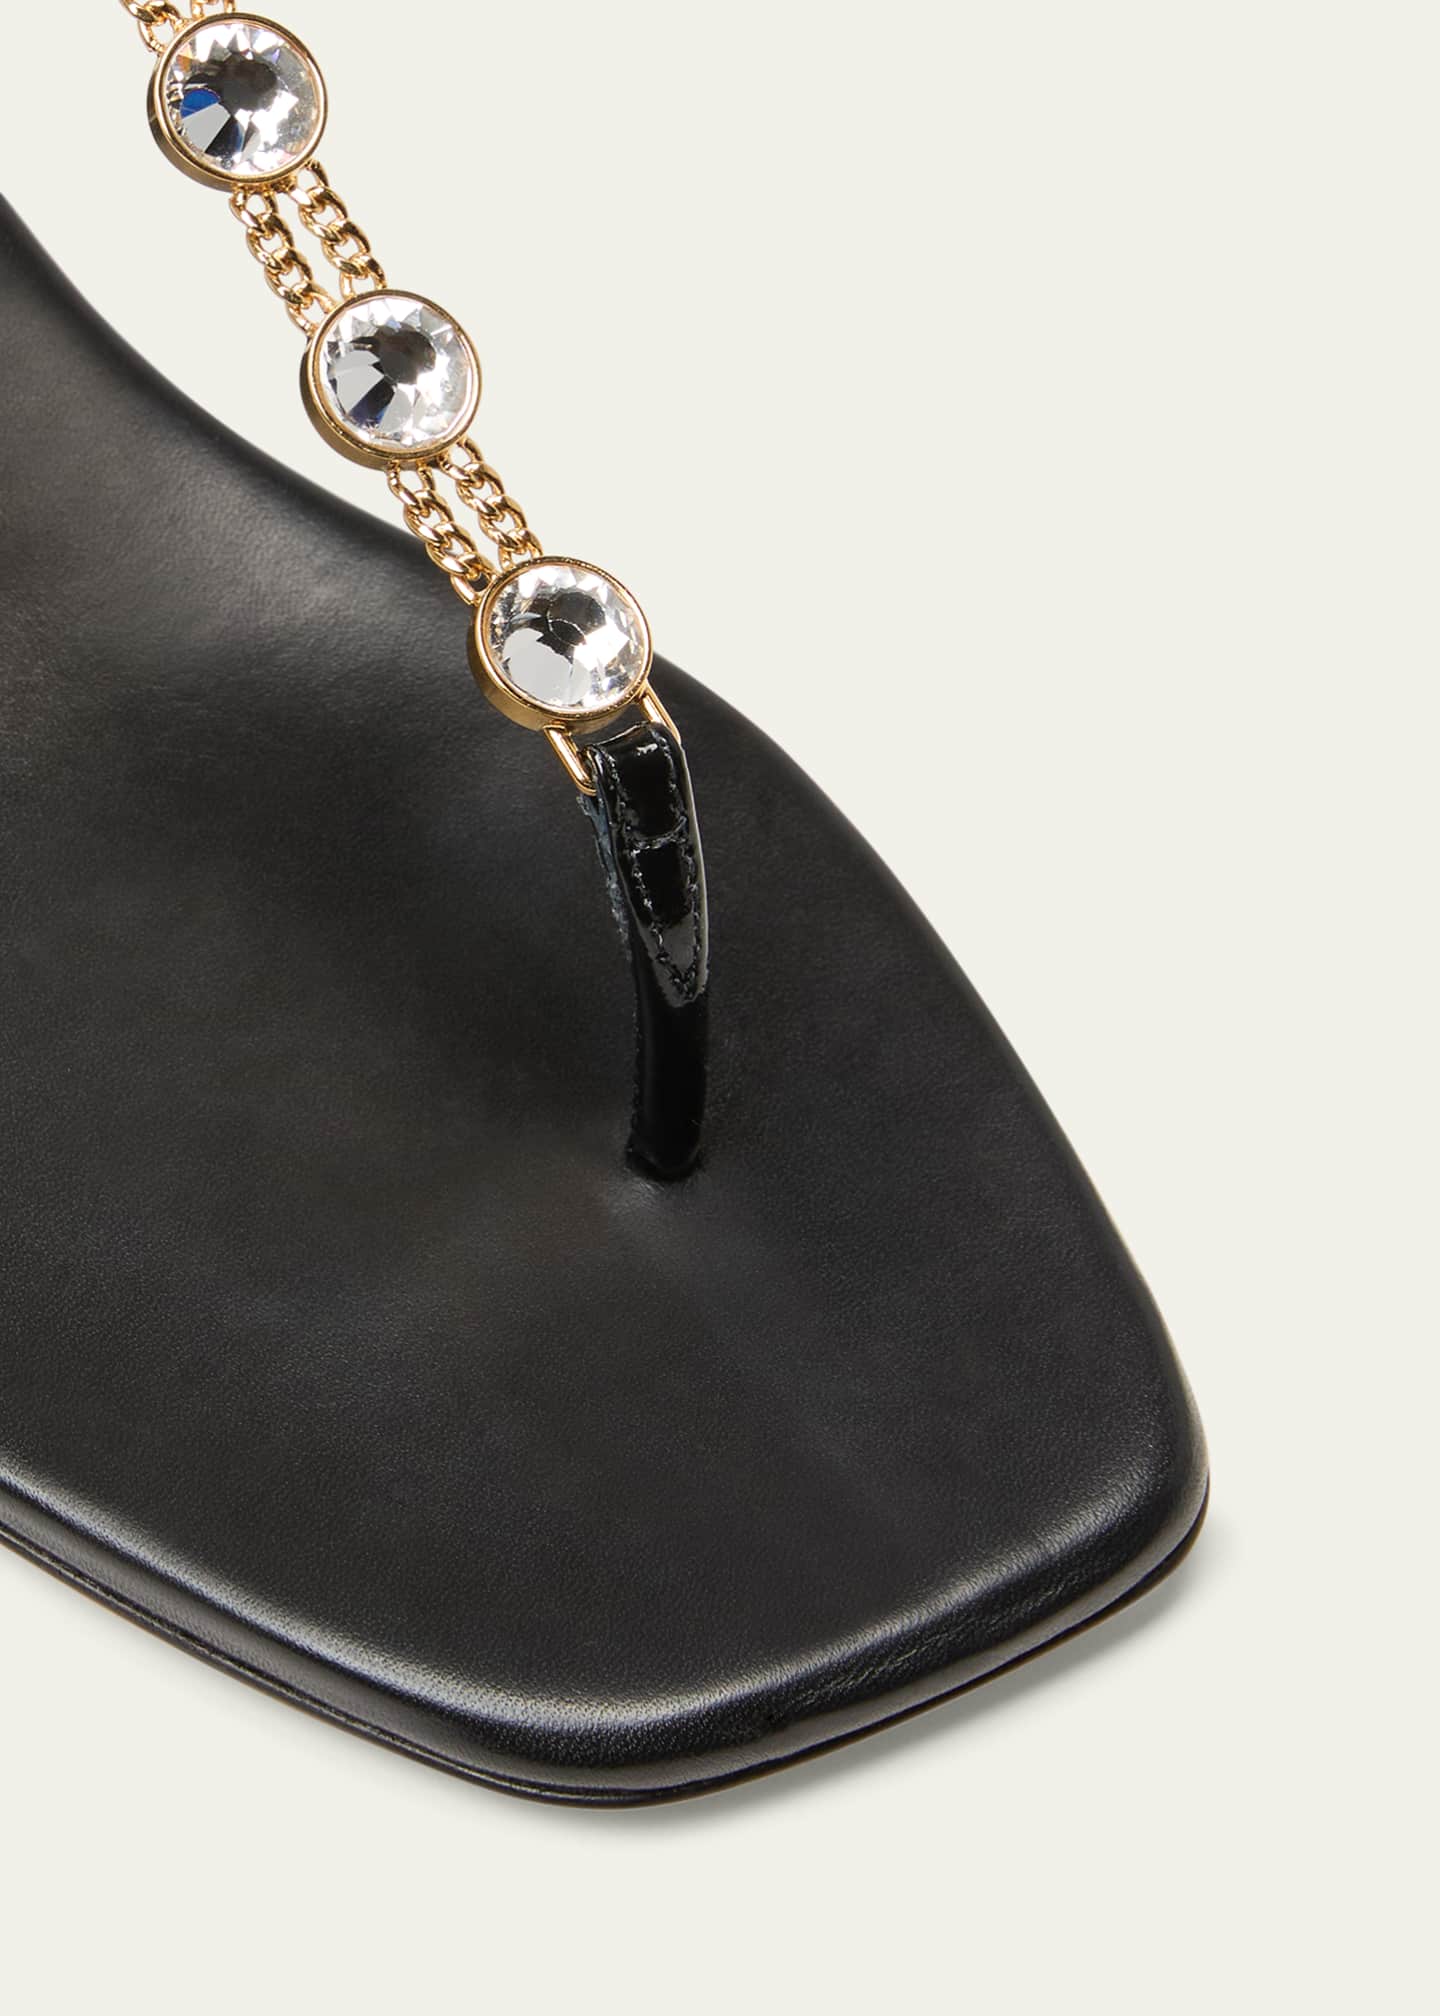 Leather thong sandals in black - Miu Miu